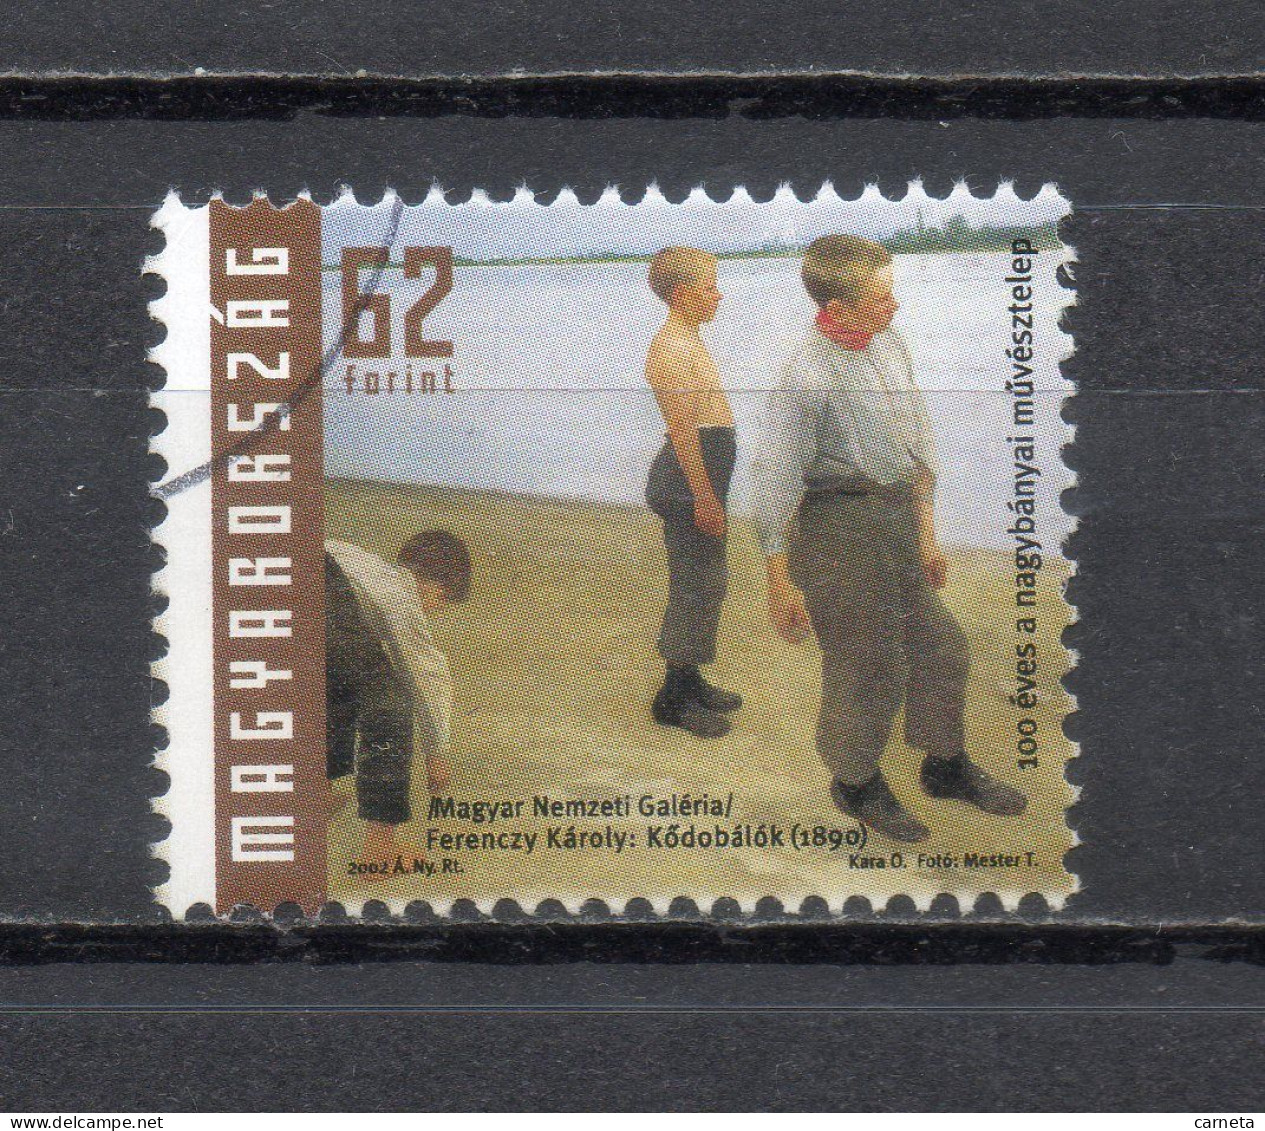 HONGRIE  N° 3850   OBLITERE    COTE 0.60€   PEINTRE TABLEAUX - Used Stamps